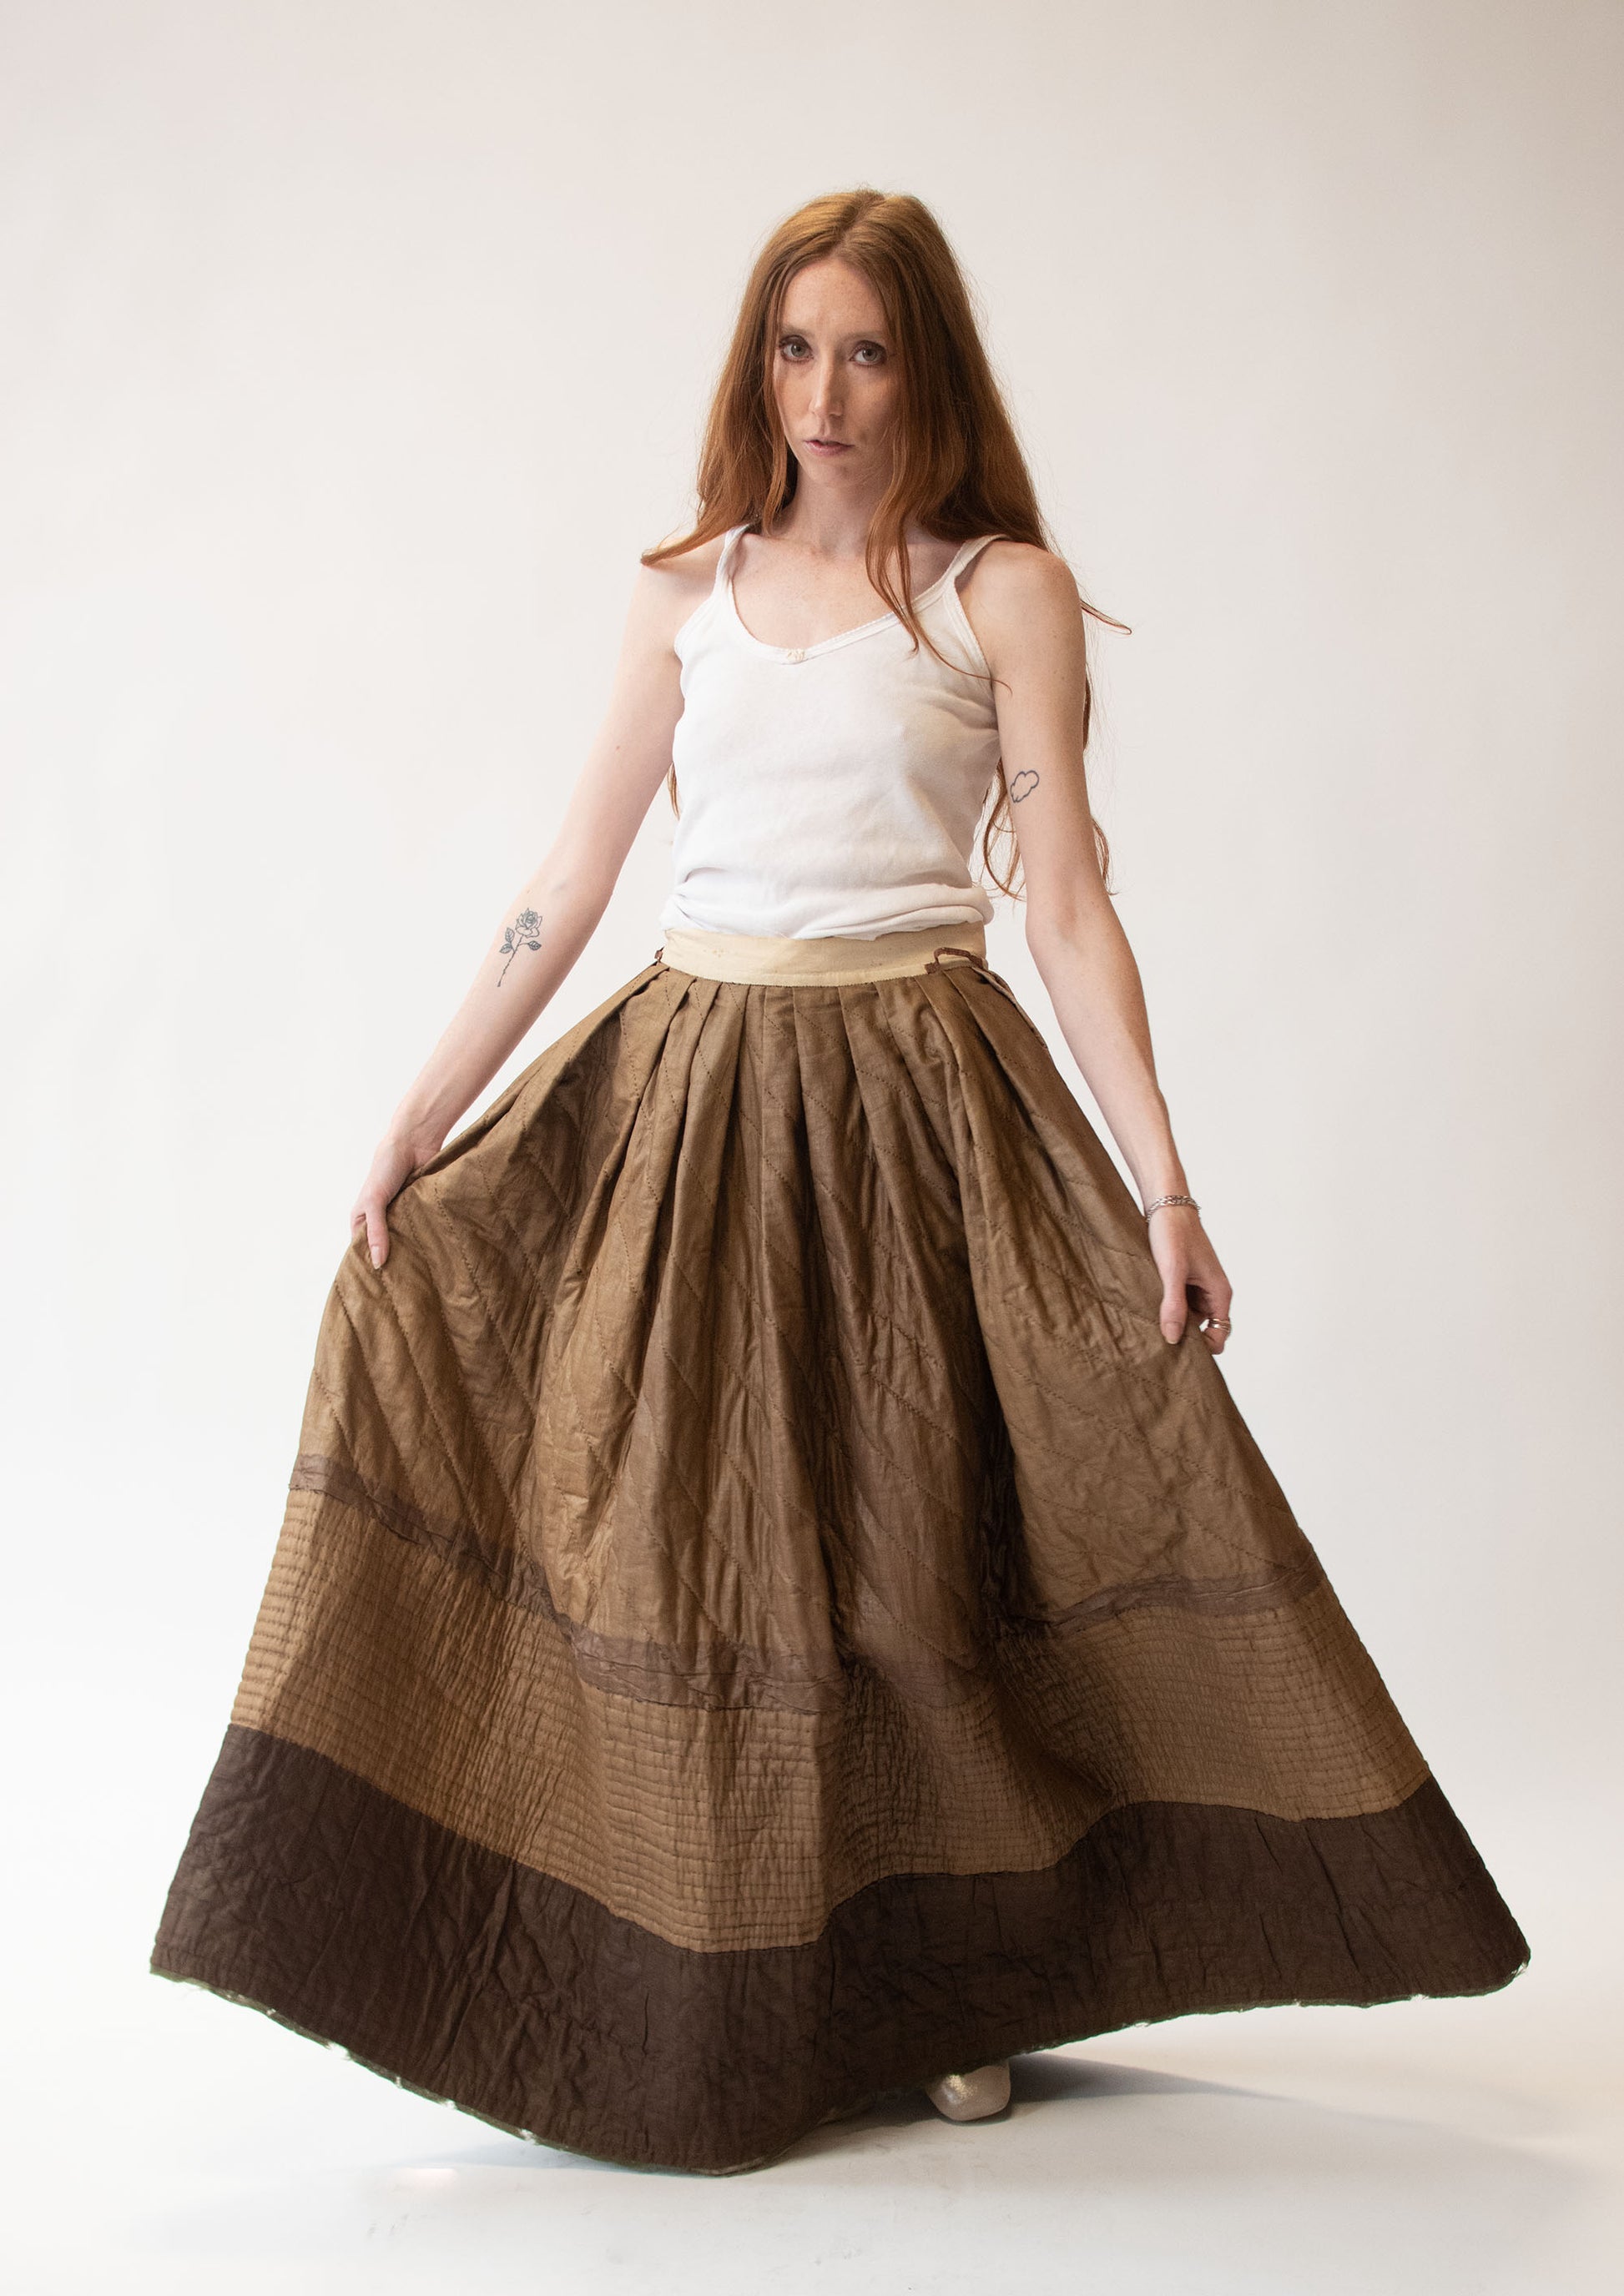 Buy HAUTELOOK Women's Pure Cotton Petticoat with Interlock Sewing